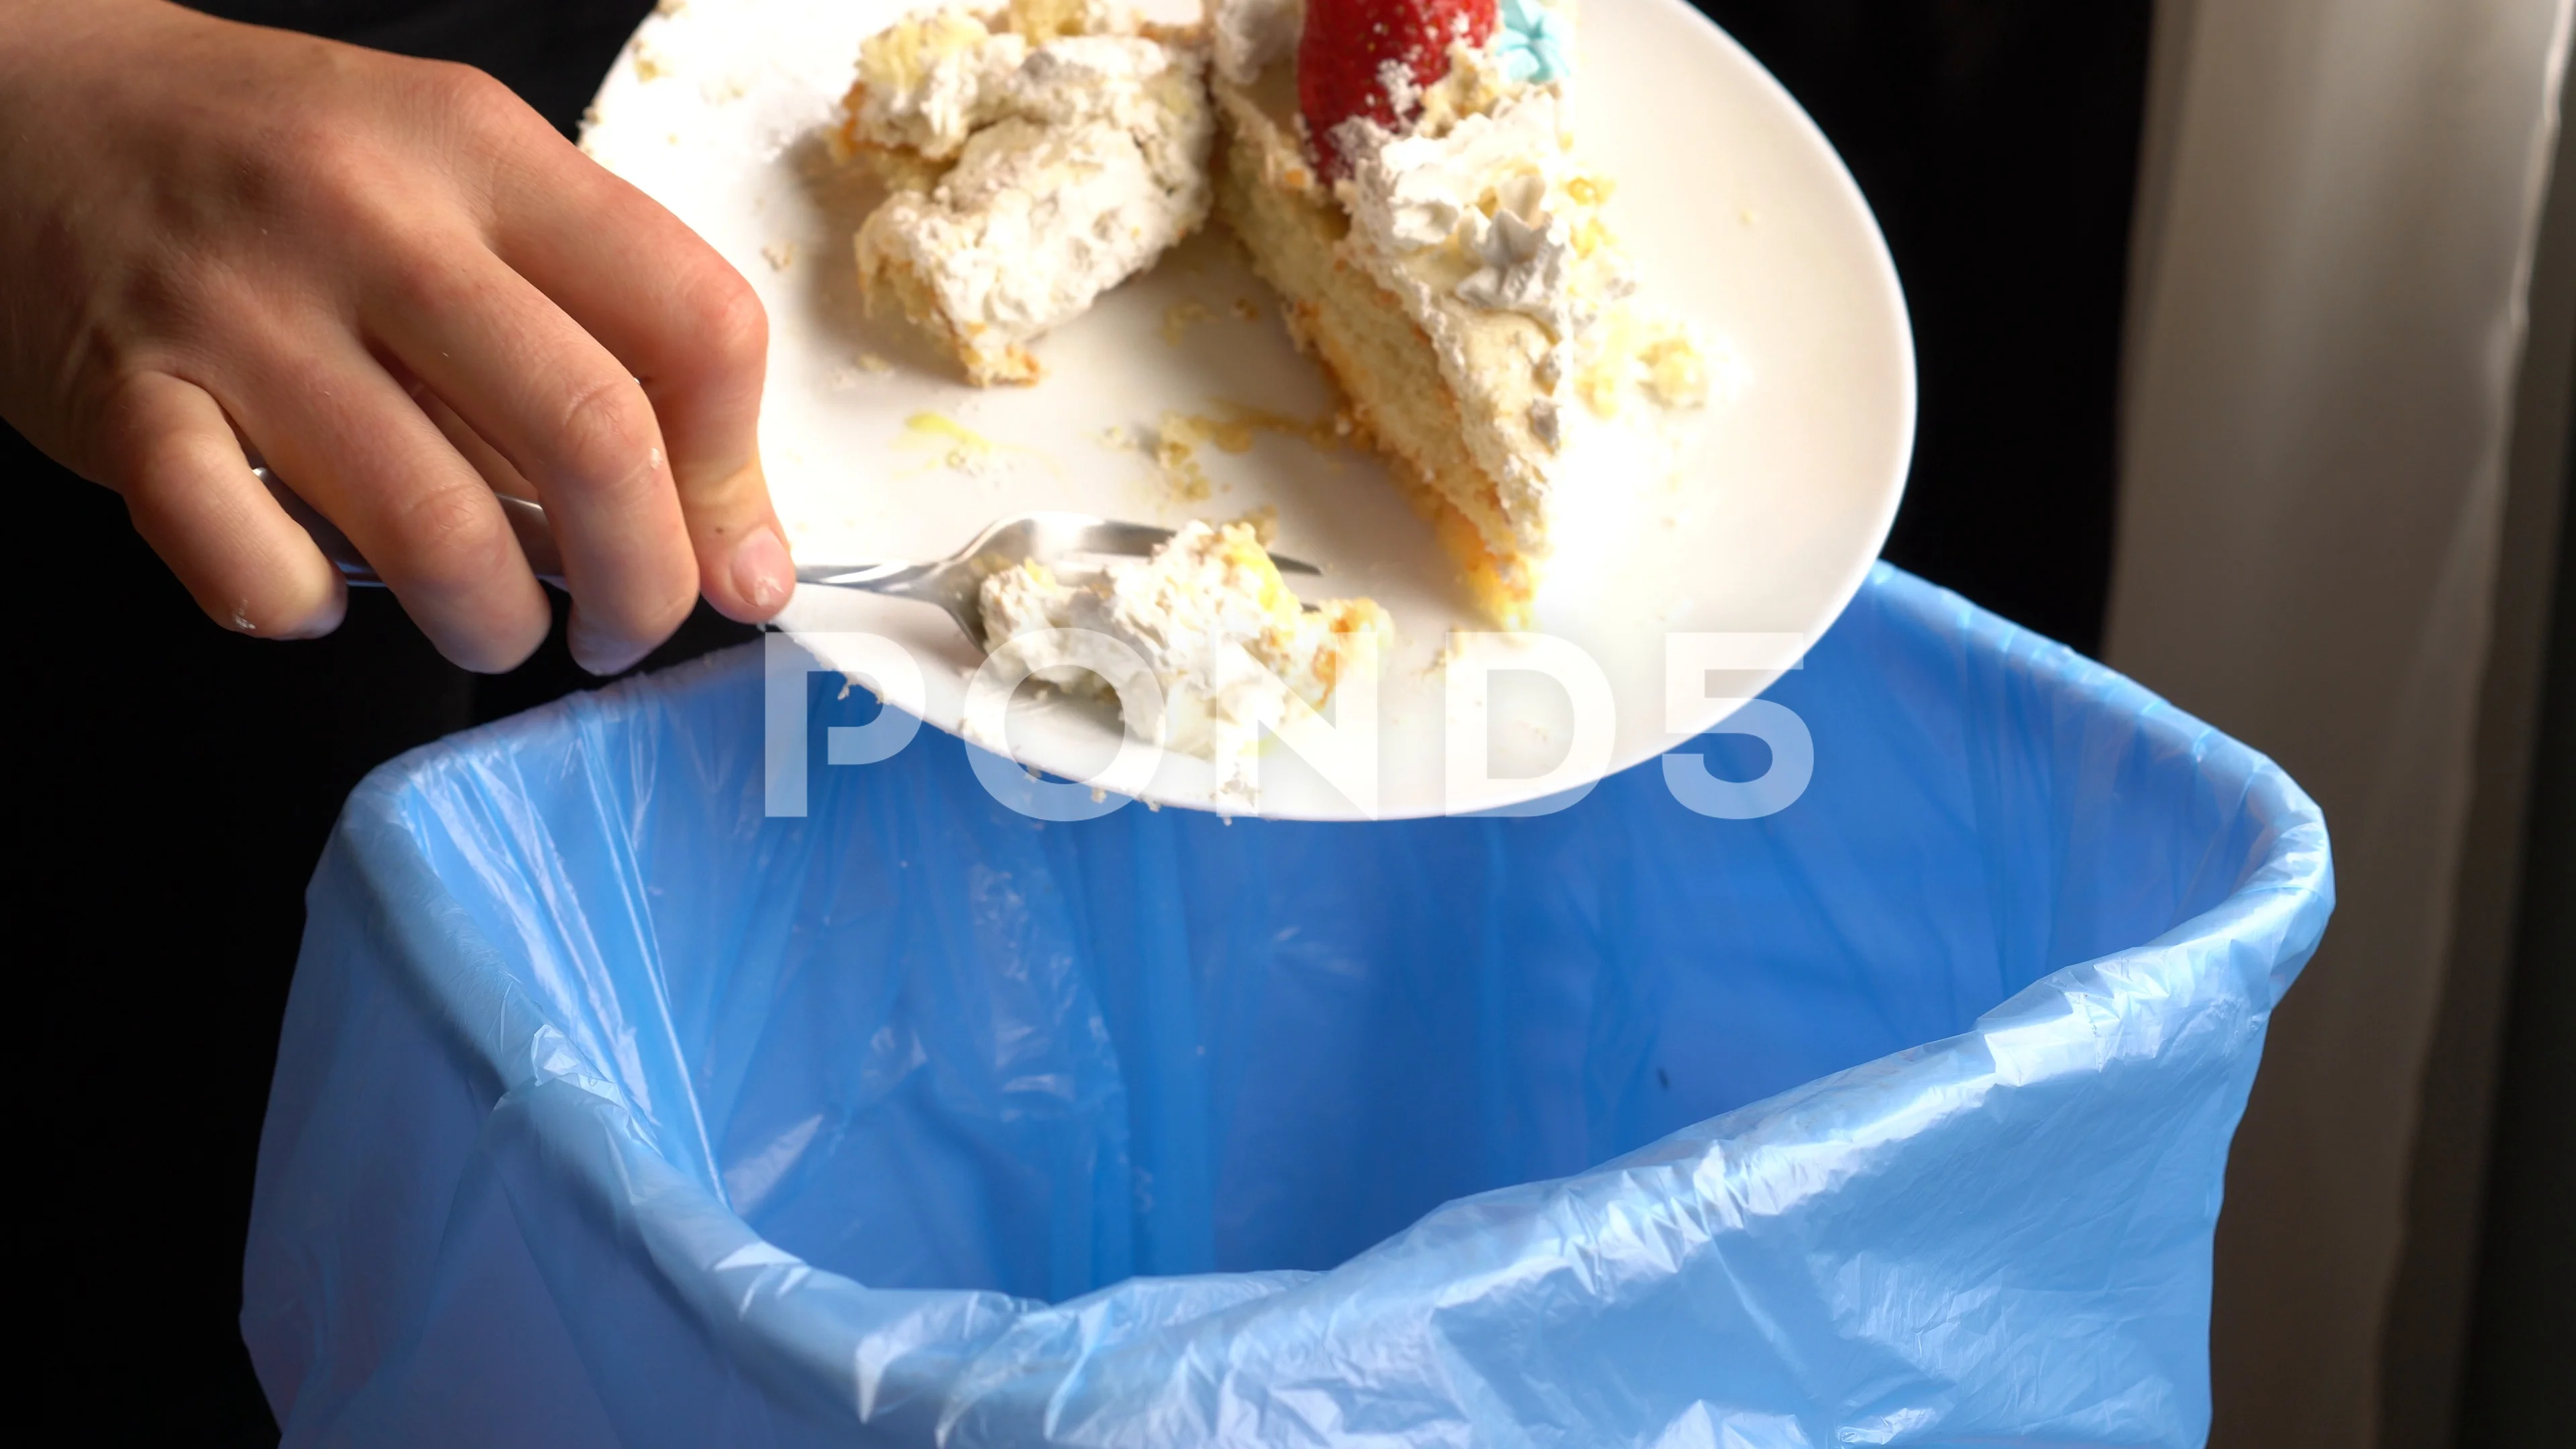 Wheelie bin cake - Biffa bin cake | No bake cake, Cake, Desserts